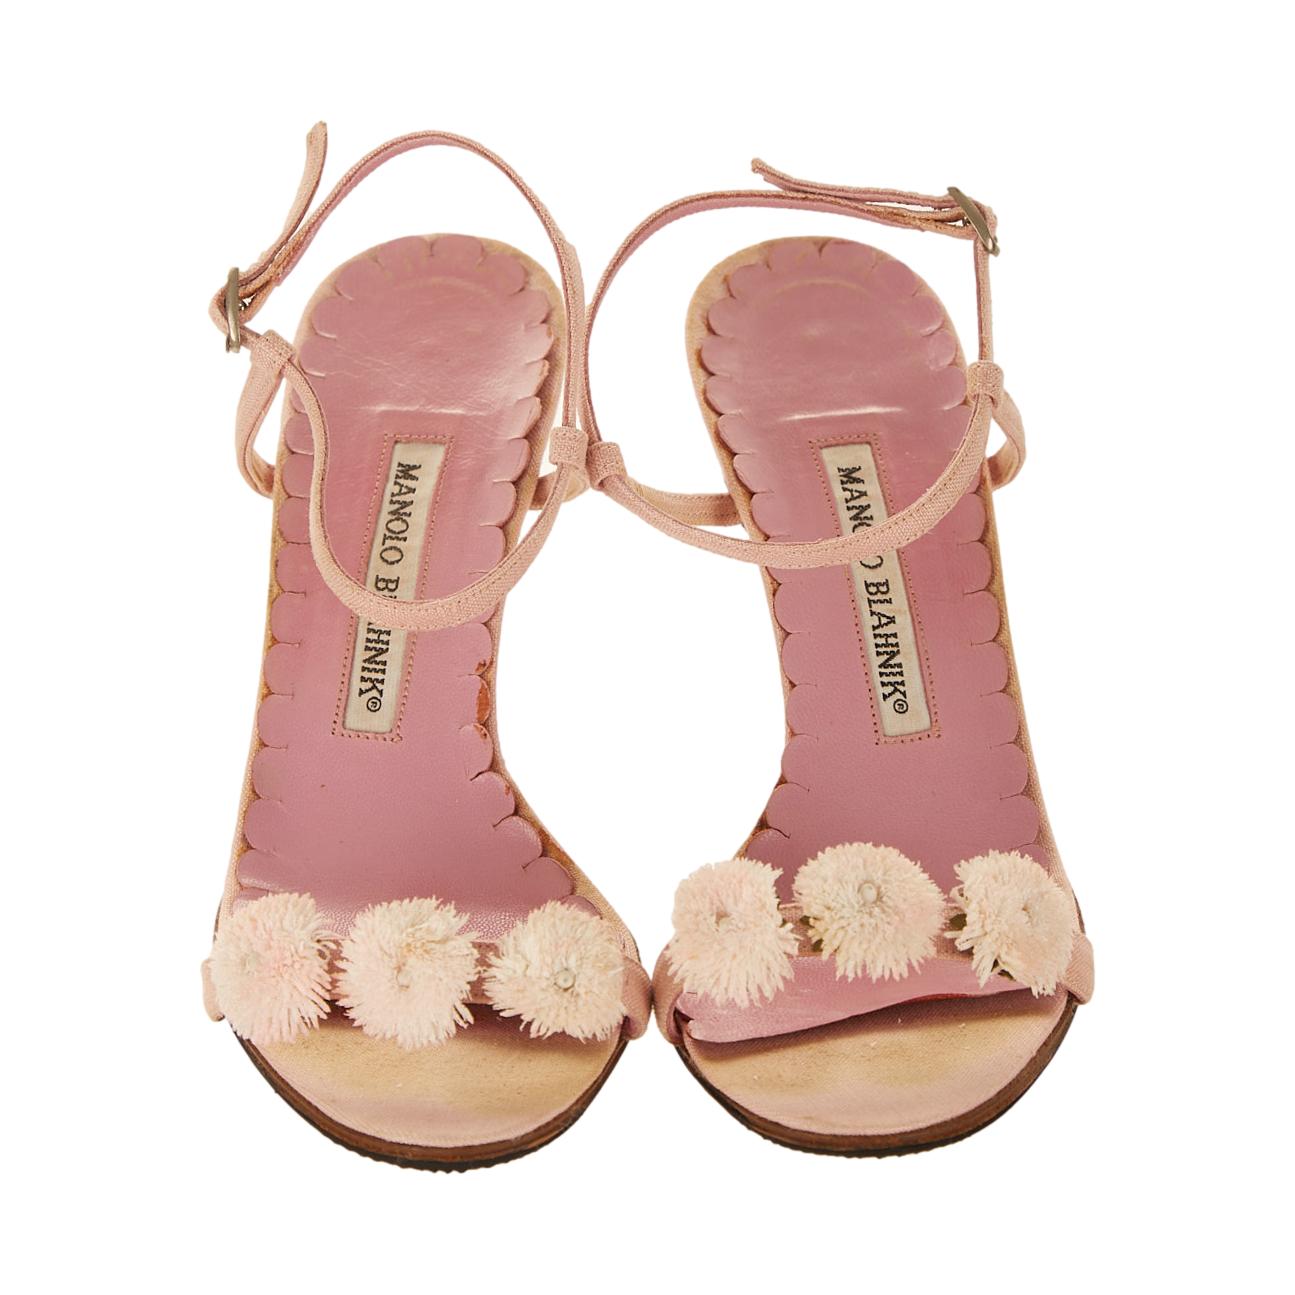 Treasures of NYC - Chanel Pink Rose Bud Kitten Heels